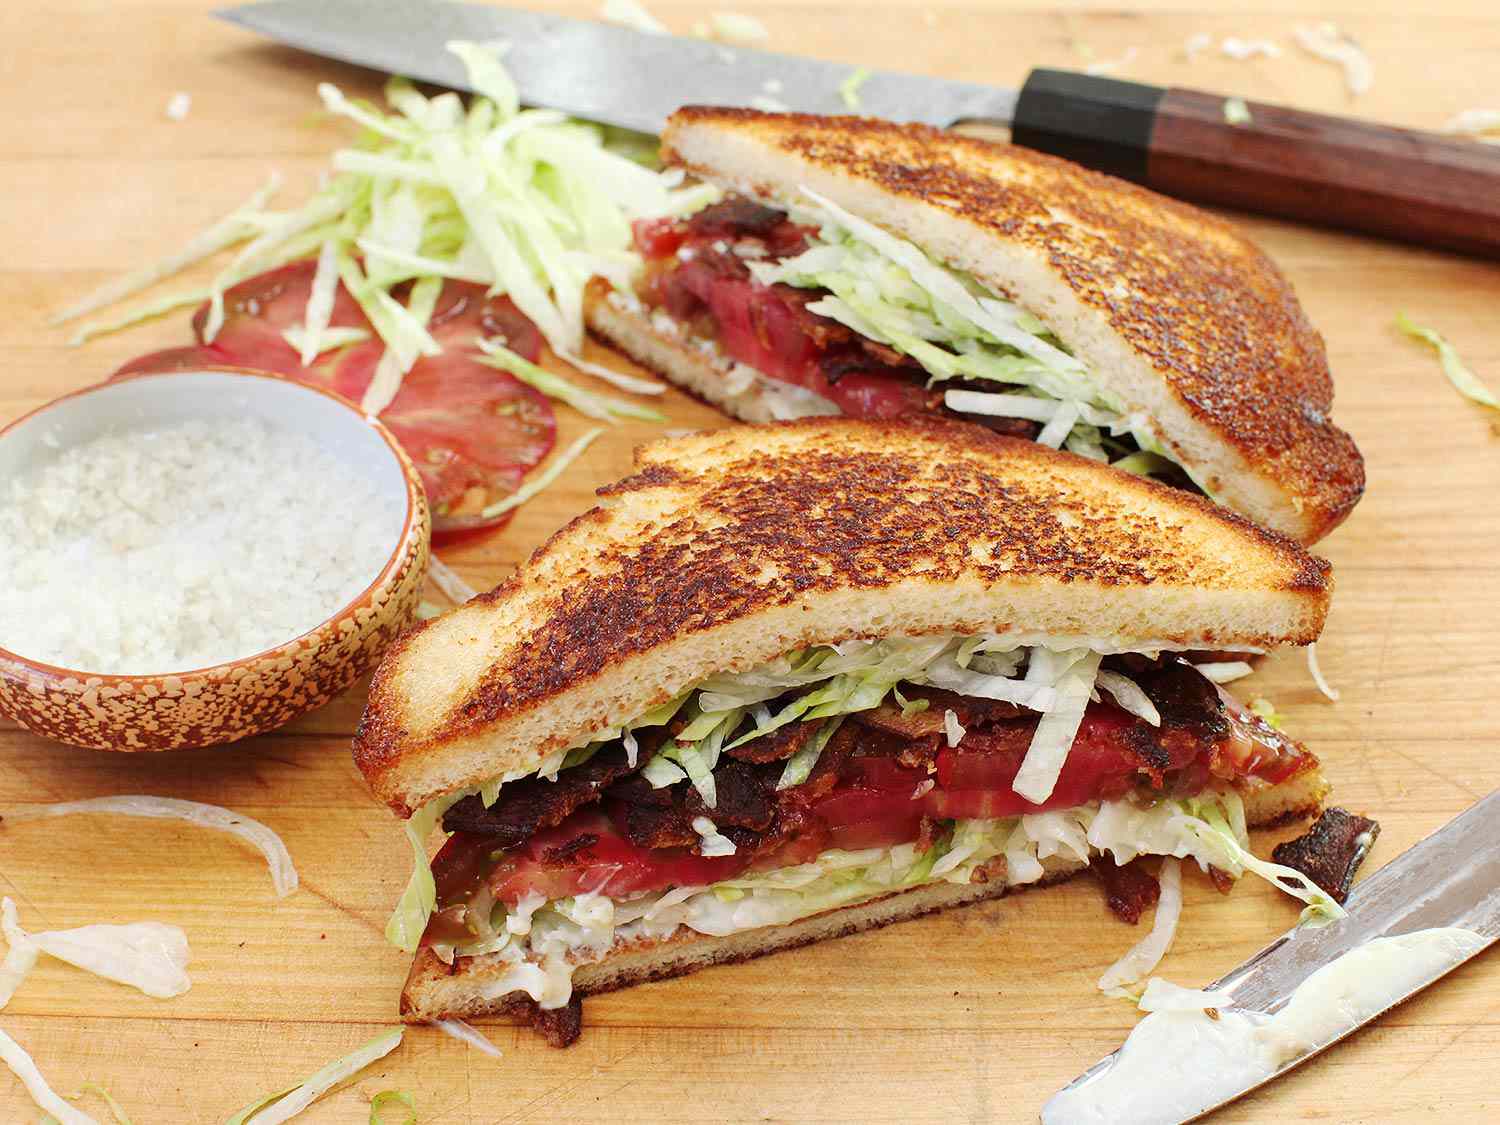 将BLT三明治对角切成两半，旁边放一小碗粗盐，番茄切片和生菜丝